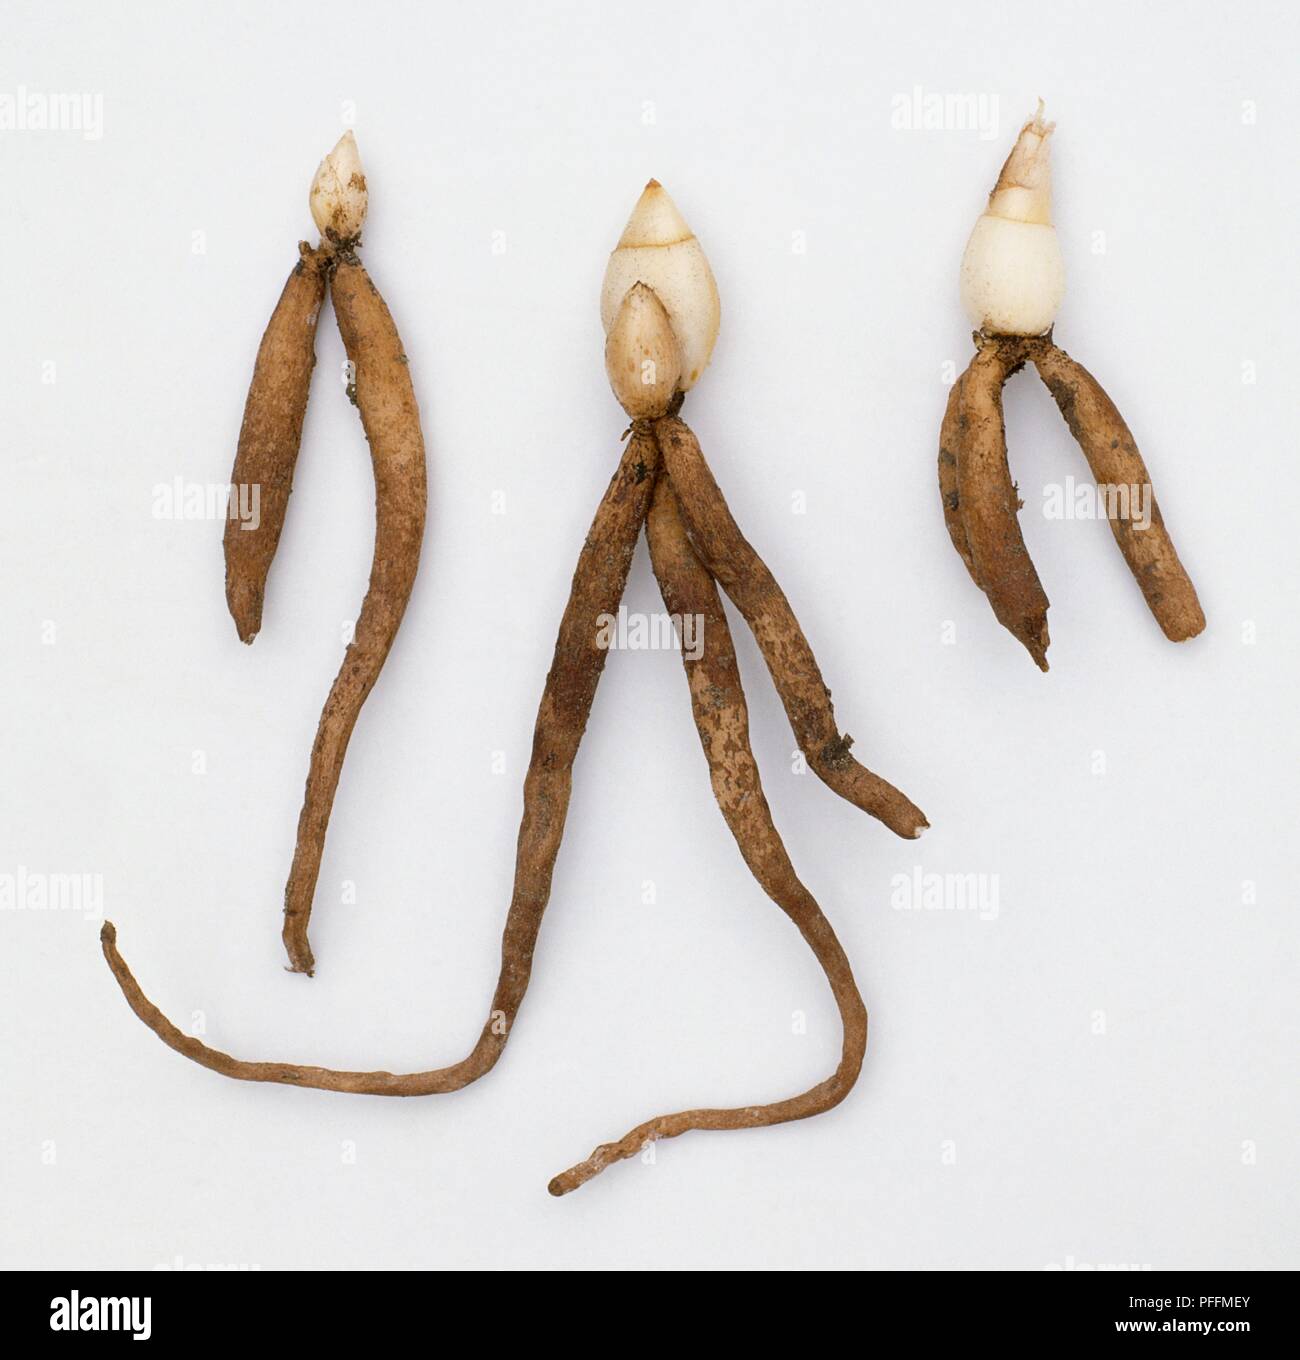 Three tubers from Iris aucheri Stock Photo